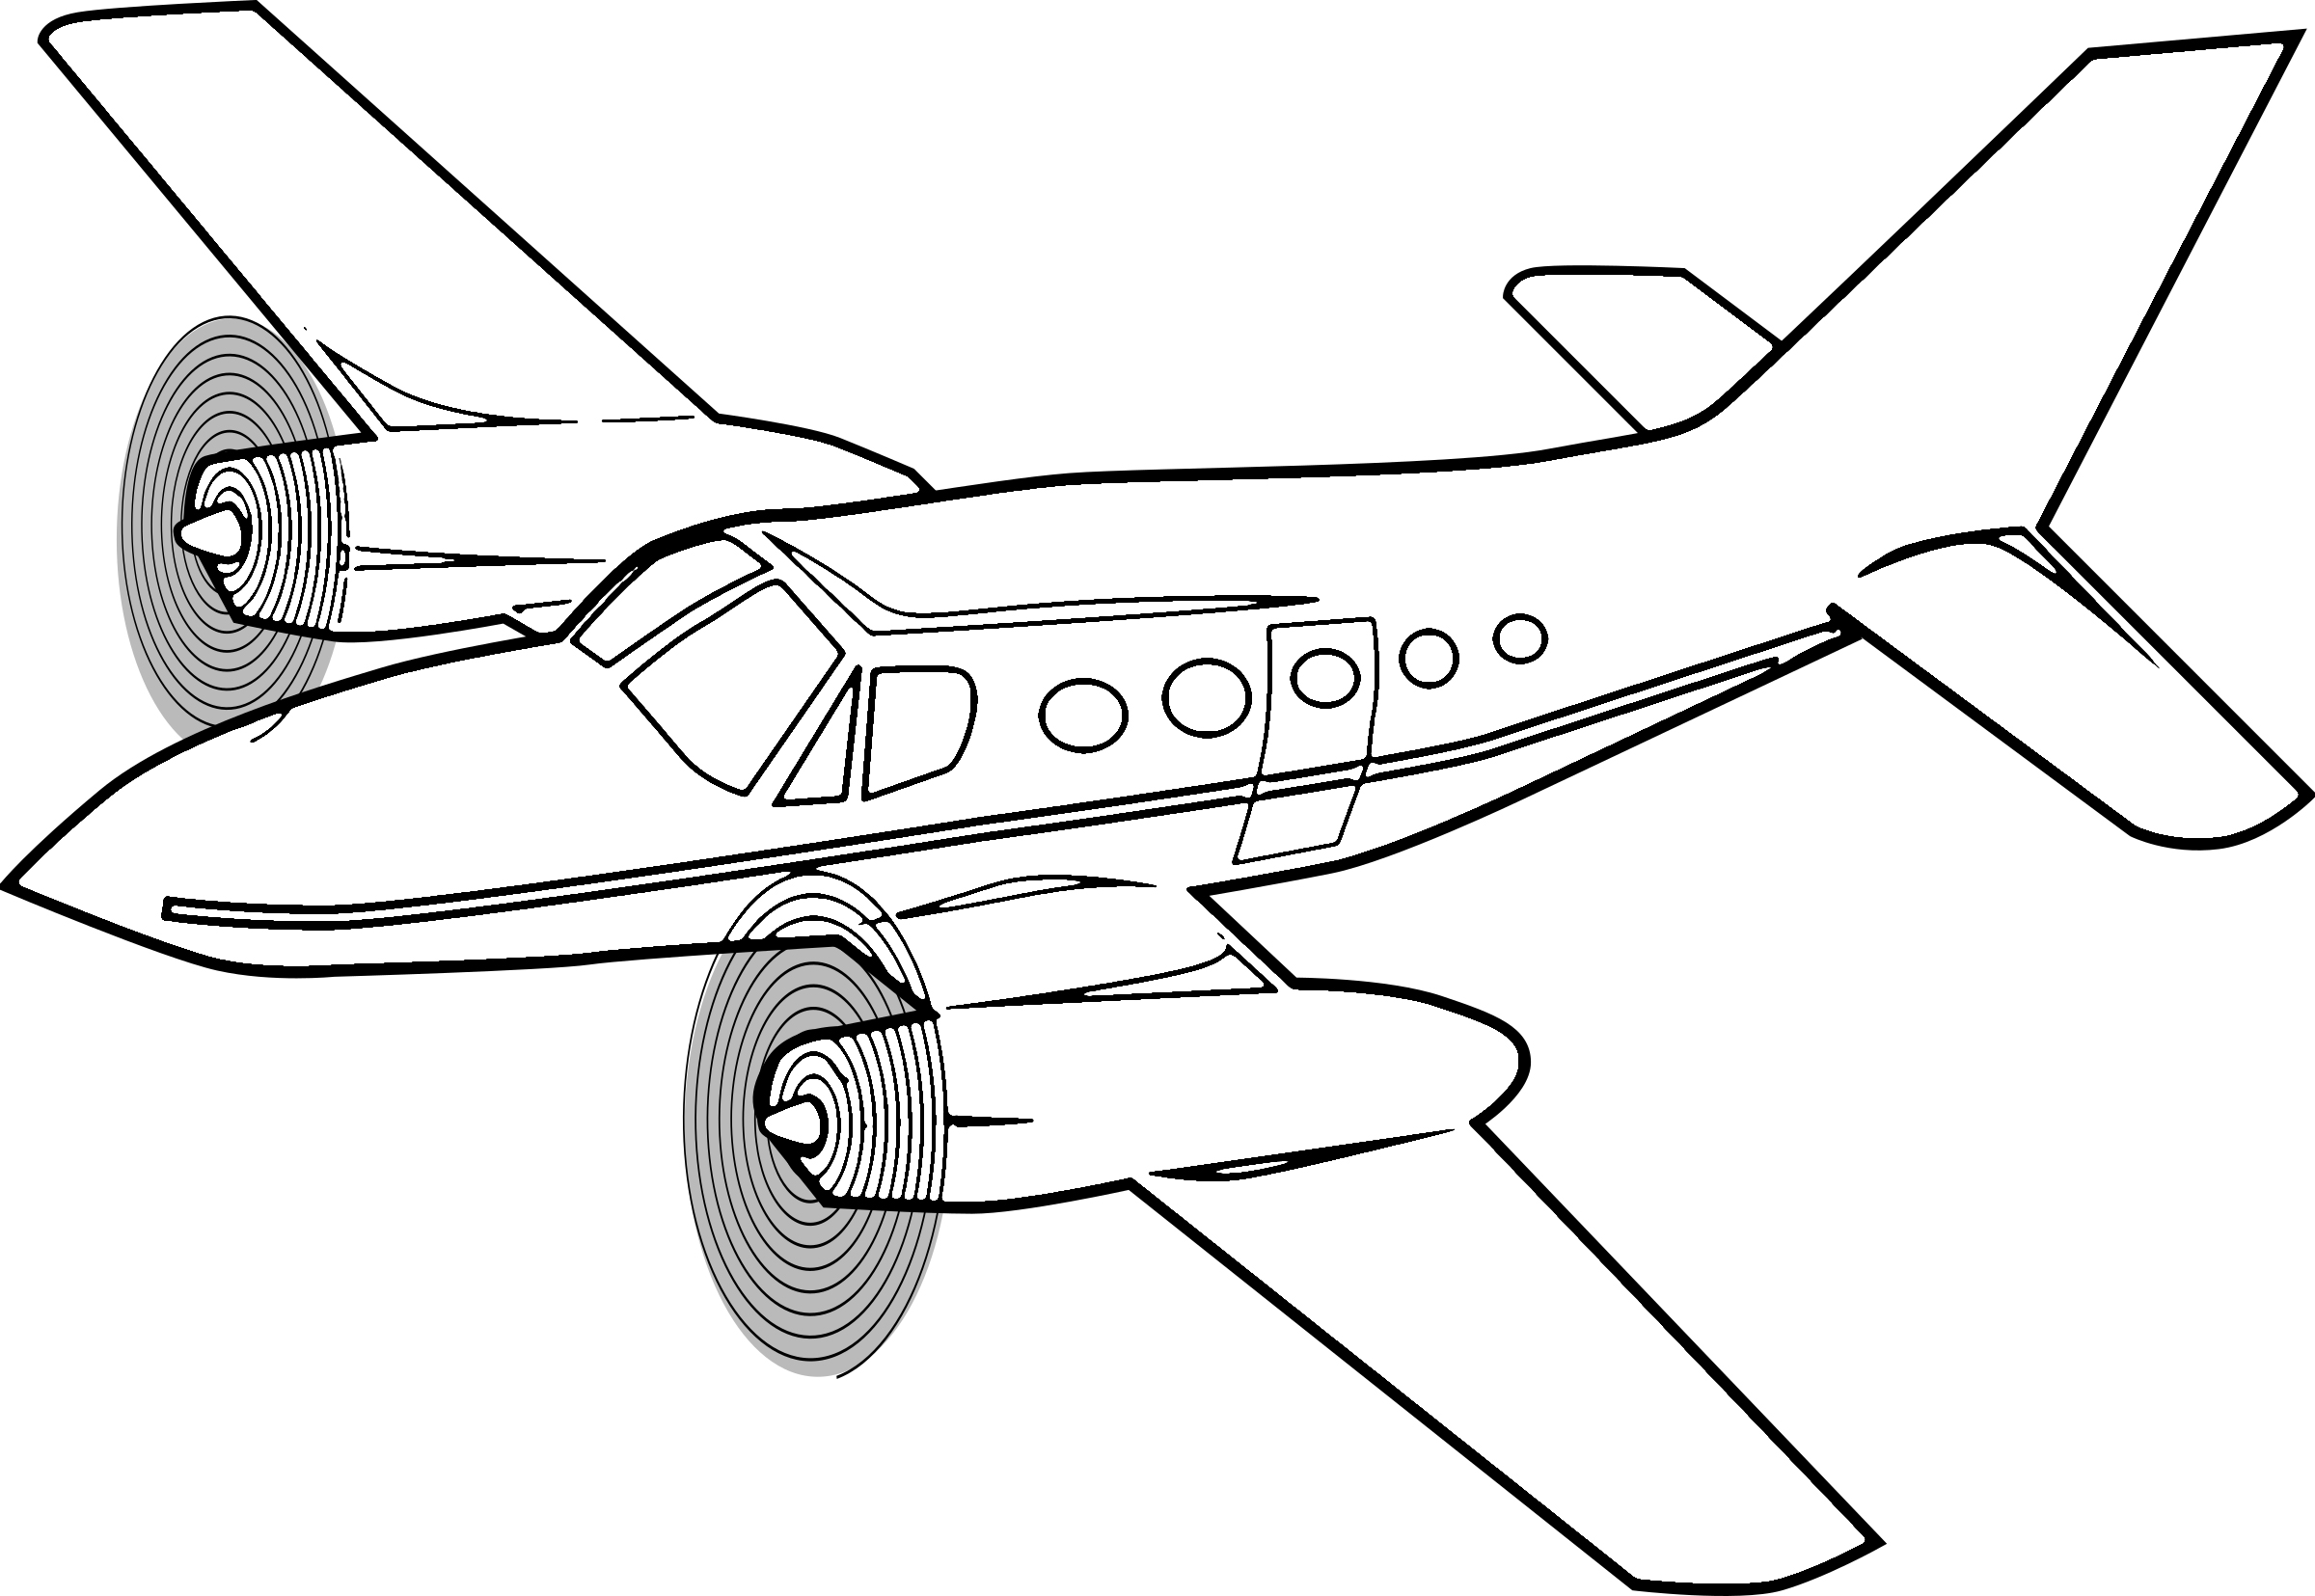 Xem hơn 100 ảnh về hình vẽ máy bay đẹp  daotaonec